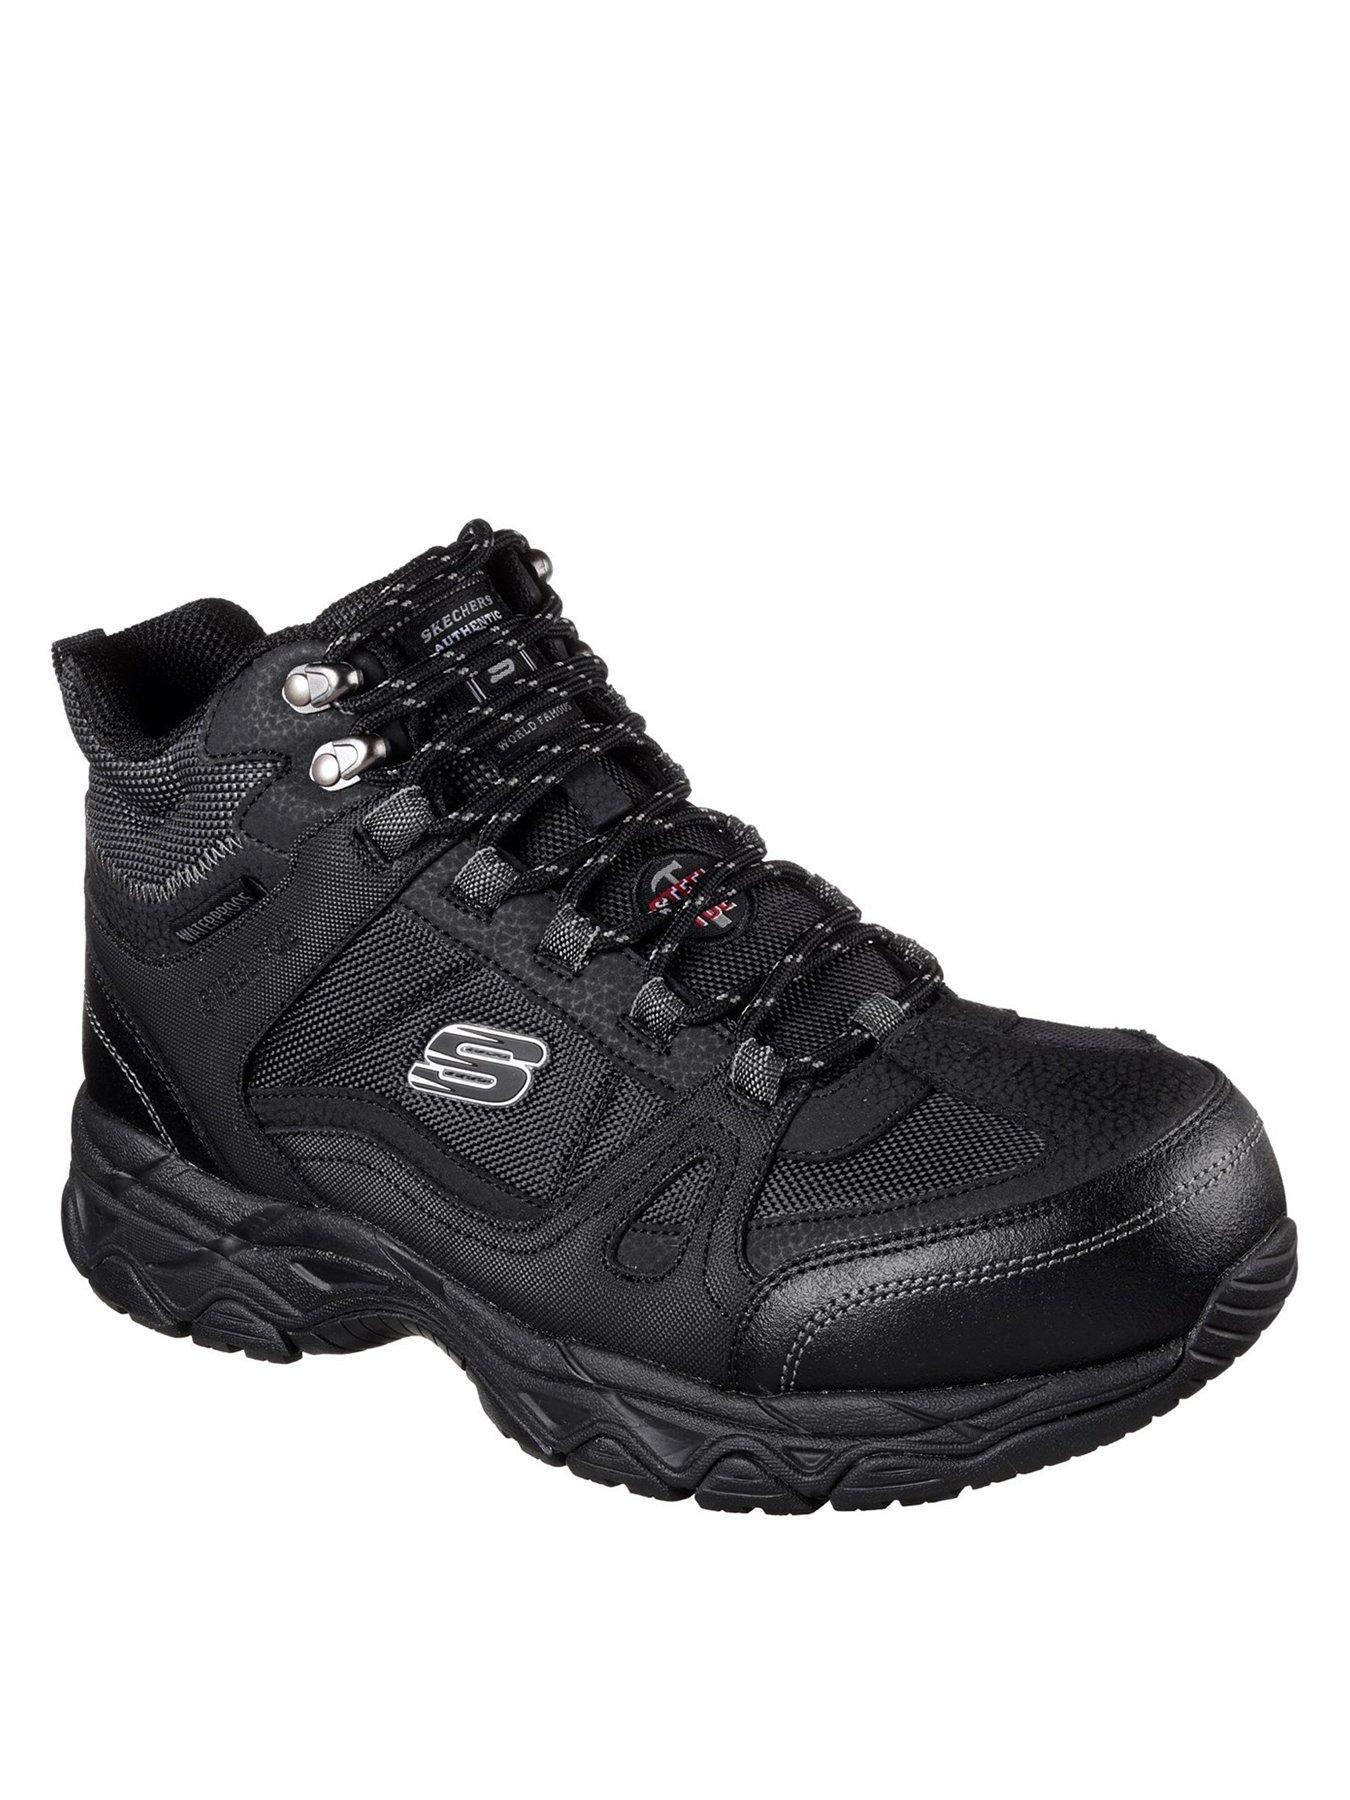 Skechers Shoes & boots | Men www.very.co.uk